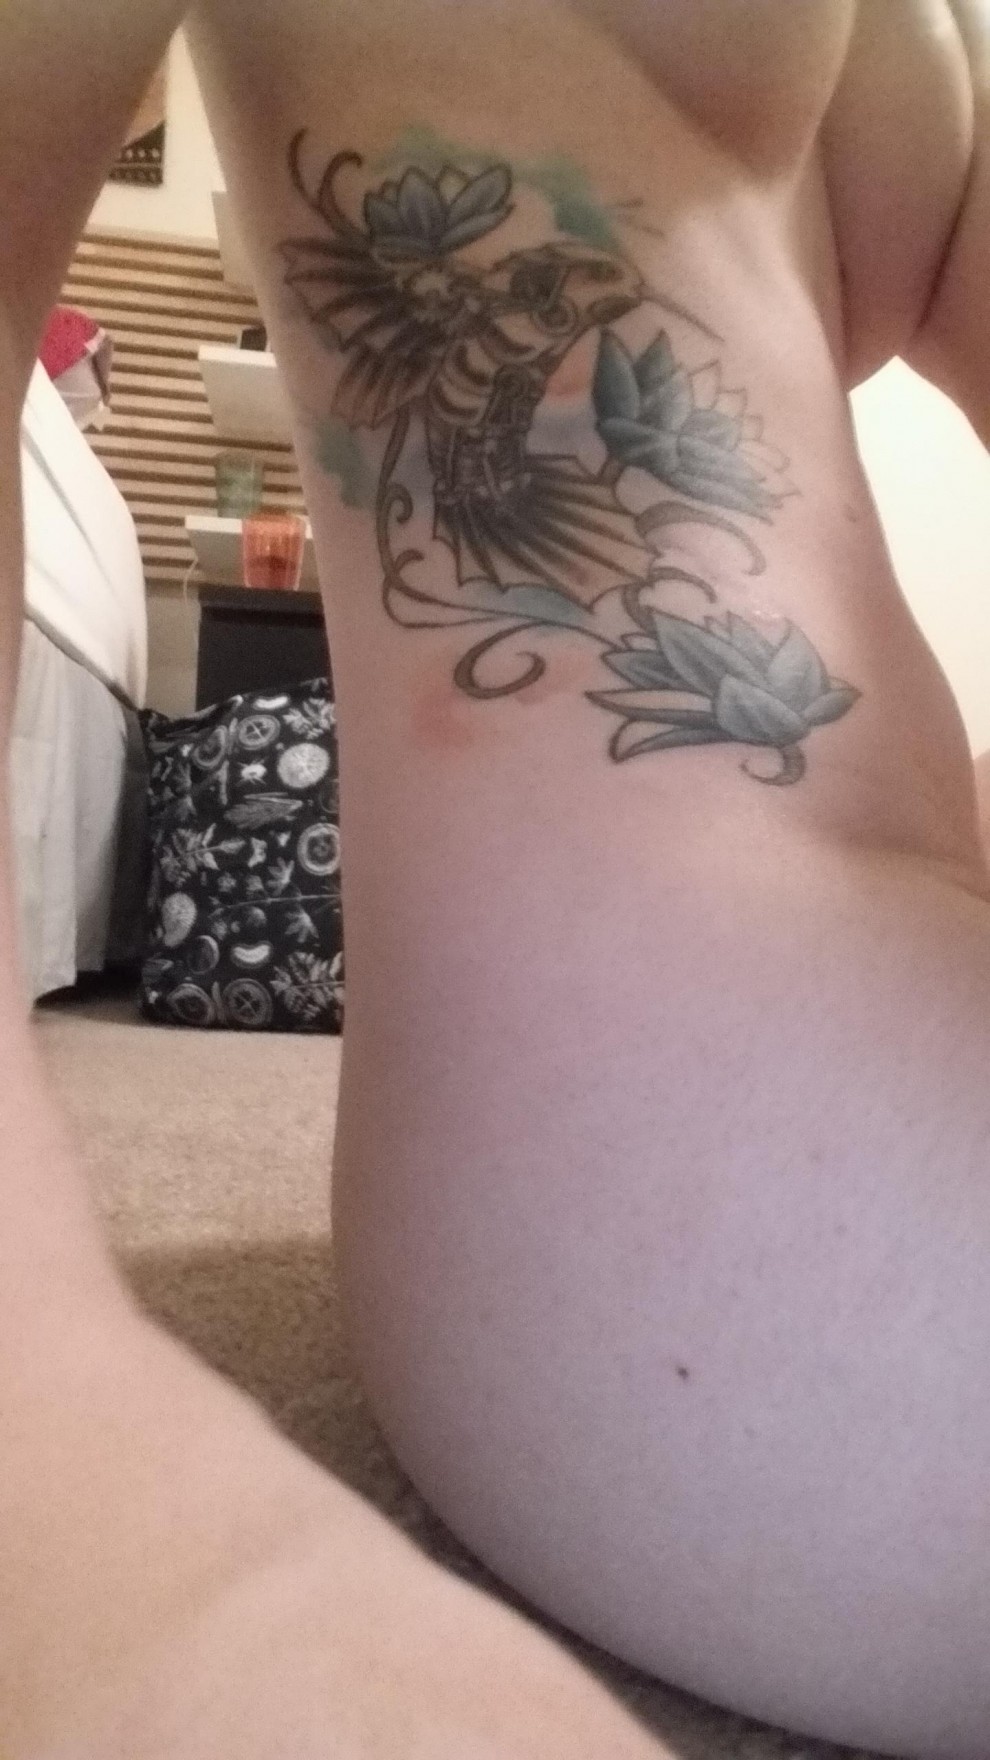 Got a decent sel[f]ie of my tattoo